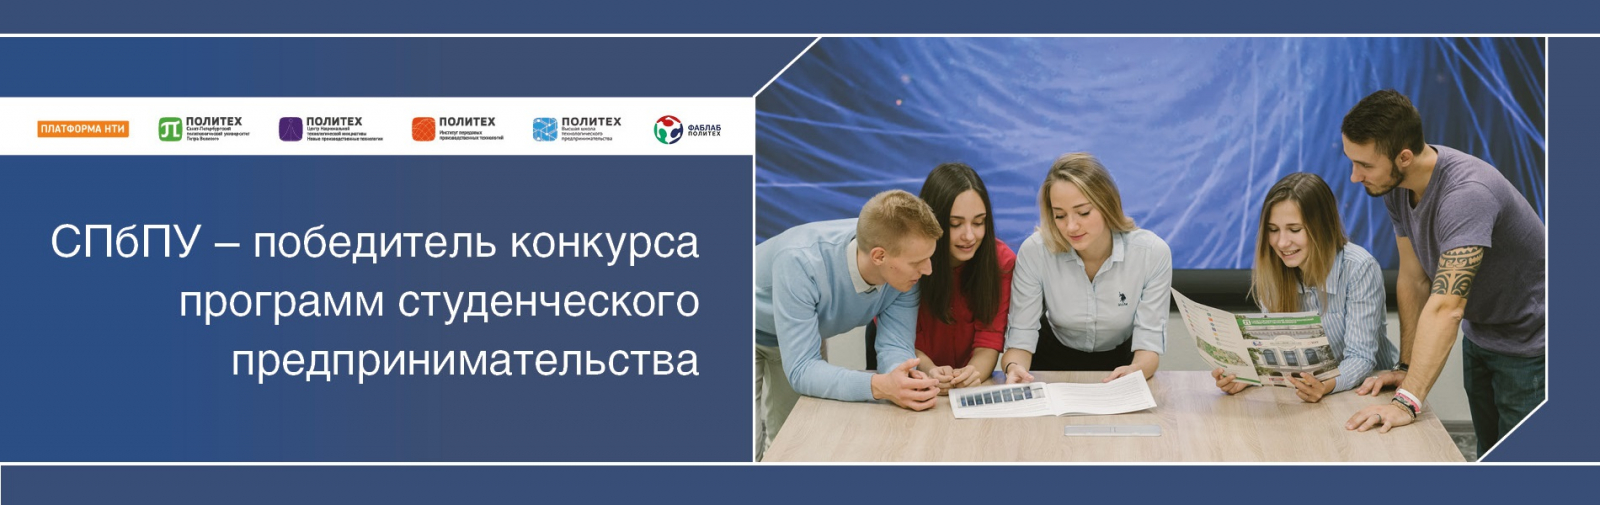 СПбПУ – победитель конкурса программ студенческого предпринимательства